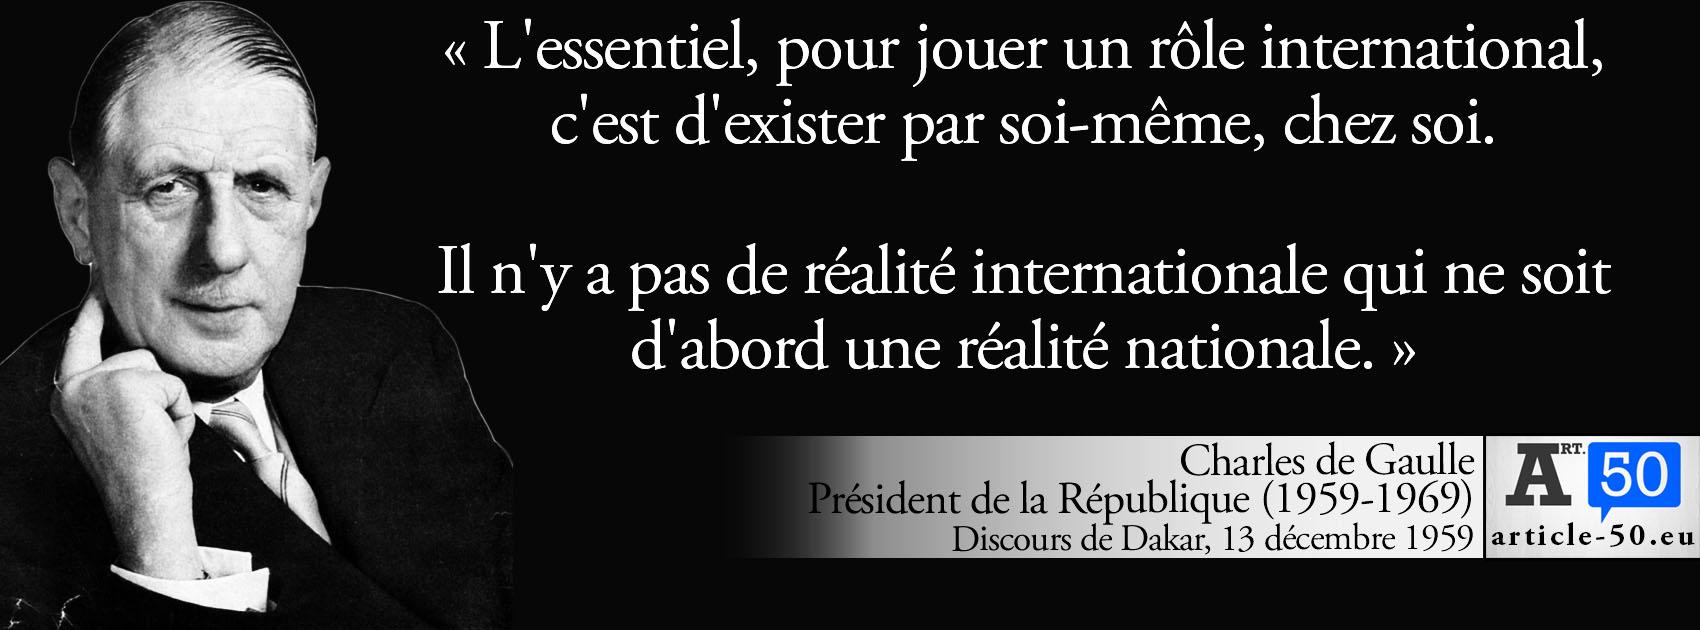 Sebastien Lebalp on X: « L'essentiel, pour jouer un rôle international, c'est d'exister par soi-même » Citations de Gaulle sur l'Europe #DPDA   / X